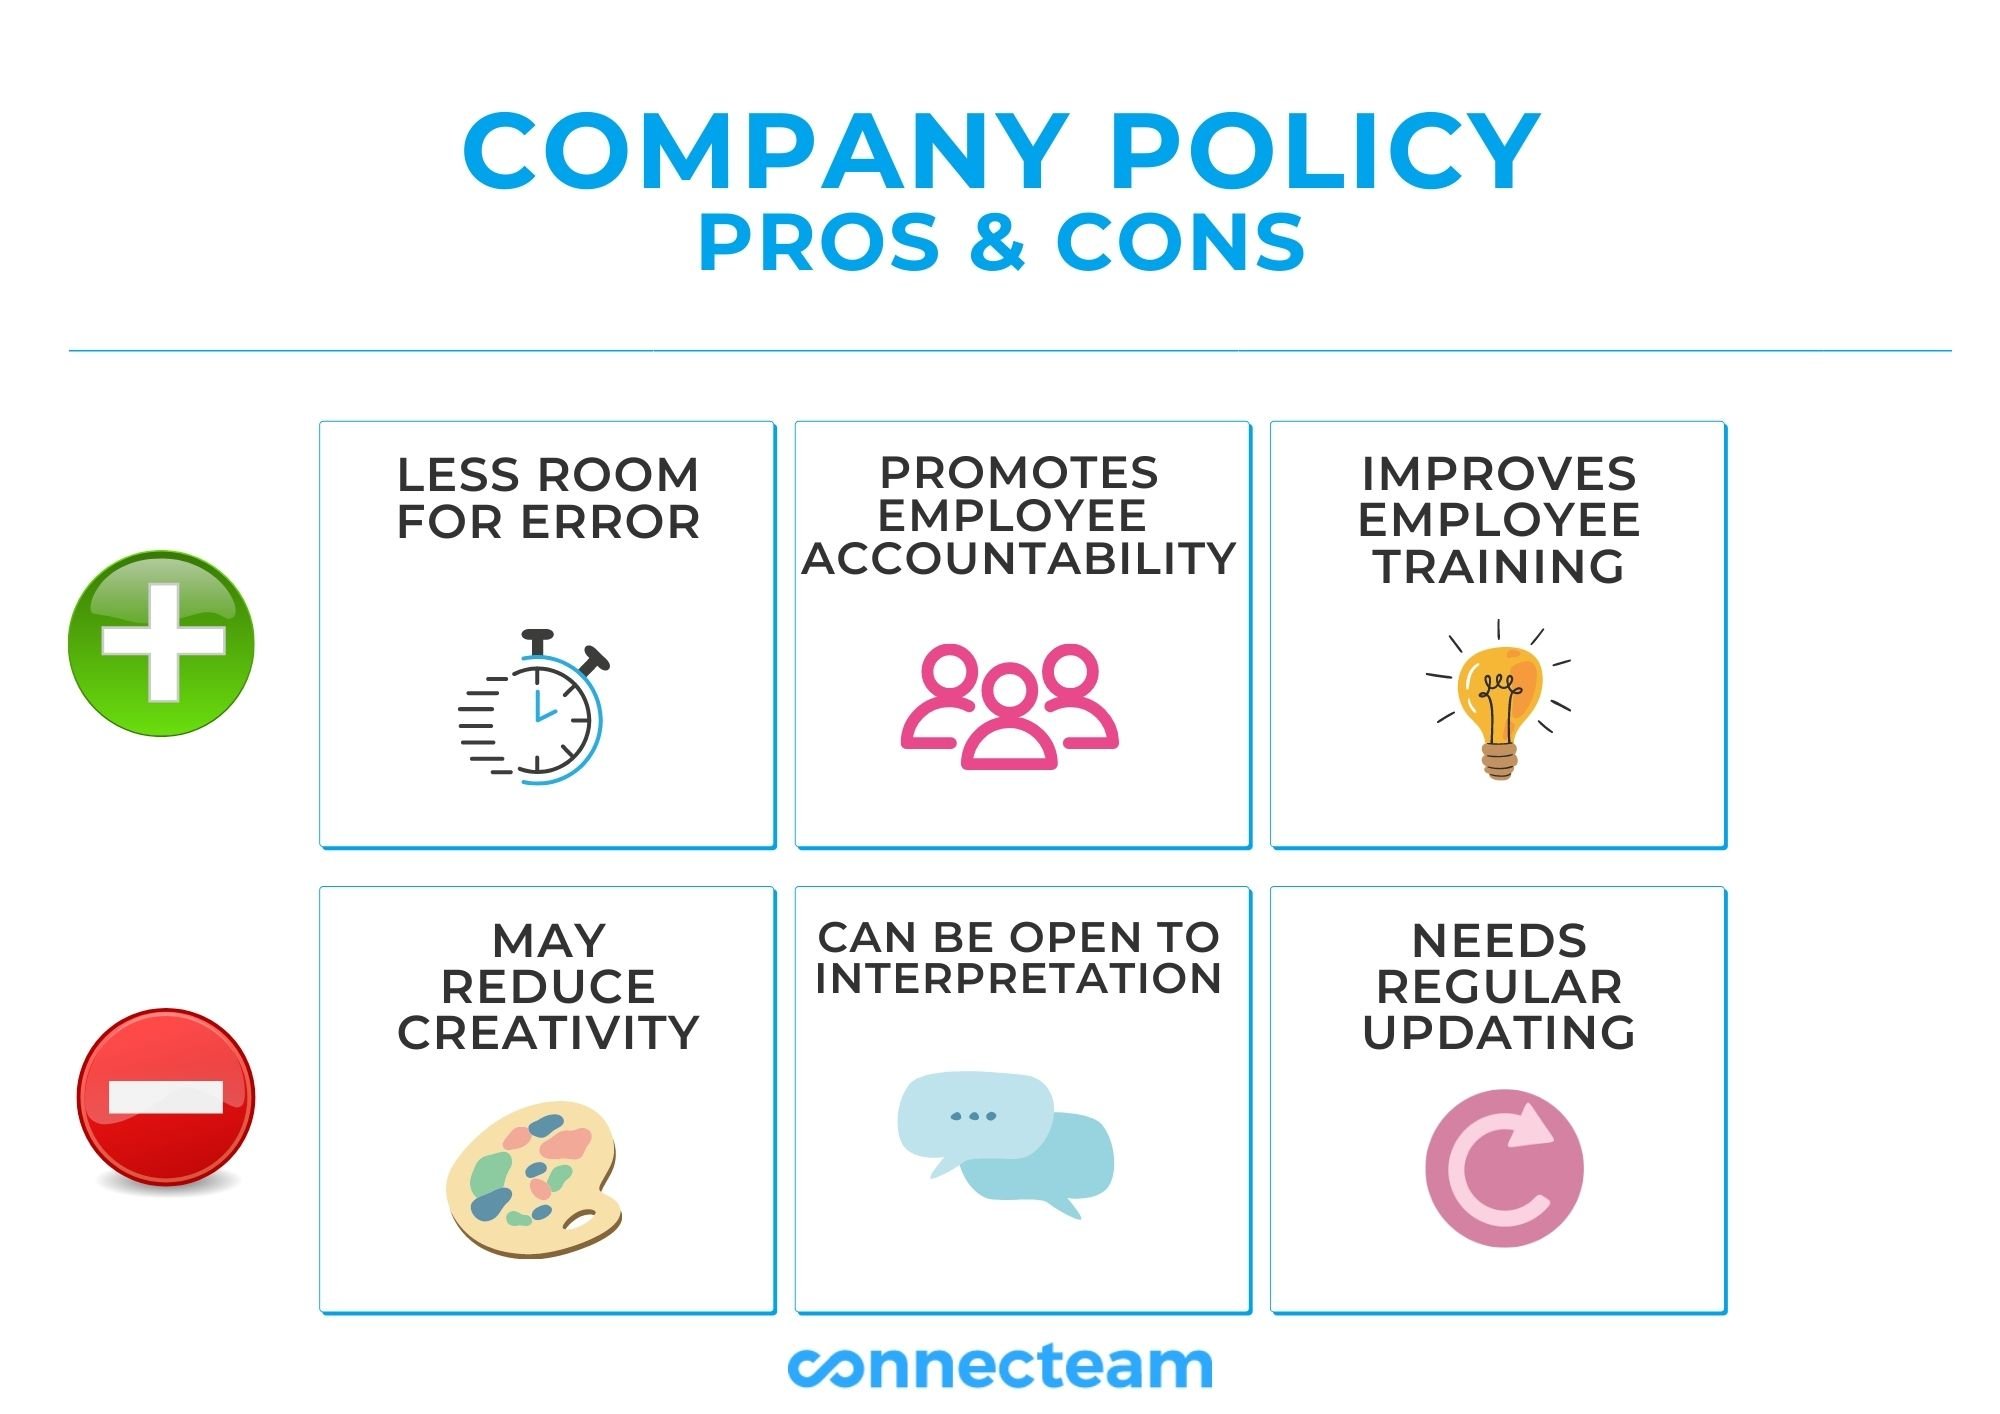 Company policy